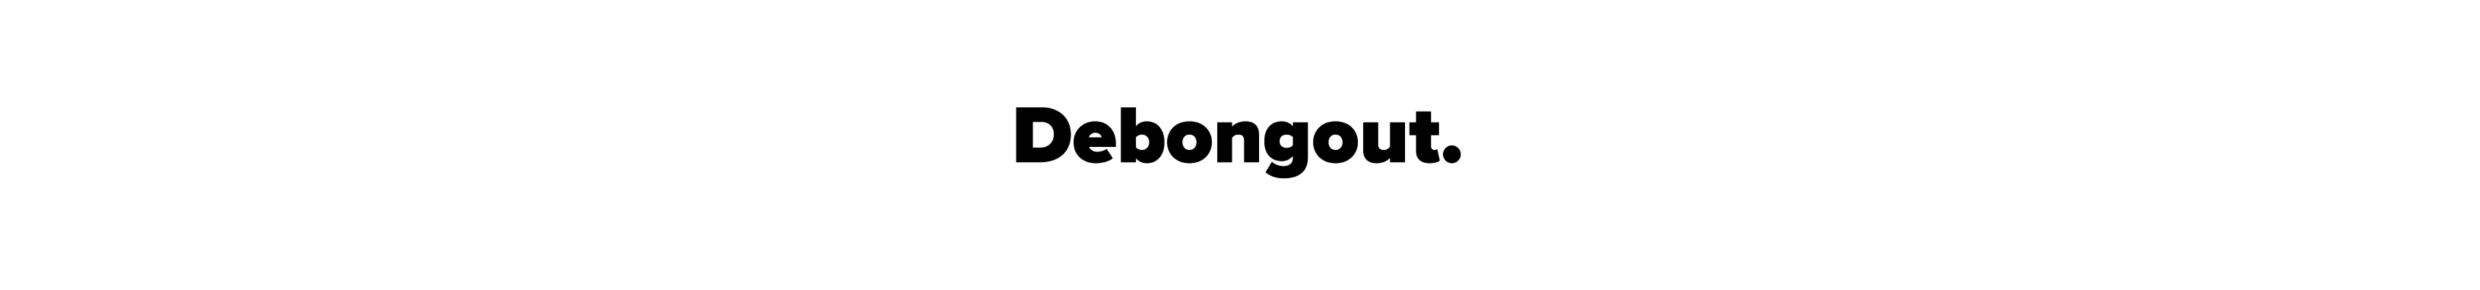 DEBONGOUT logo